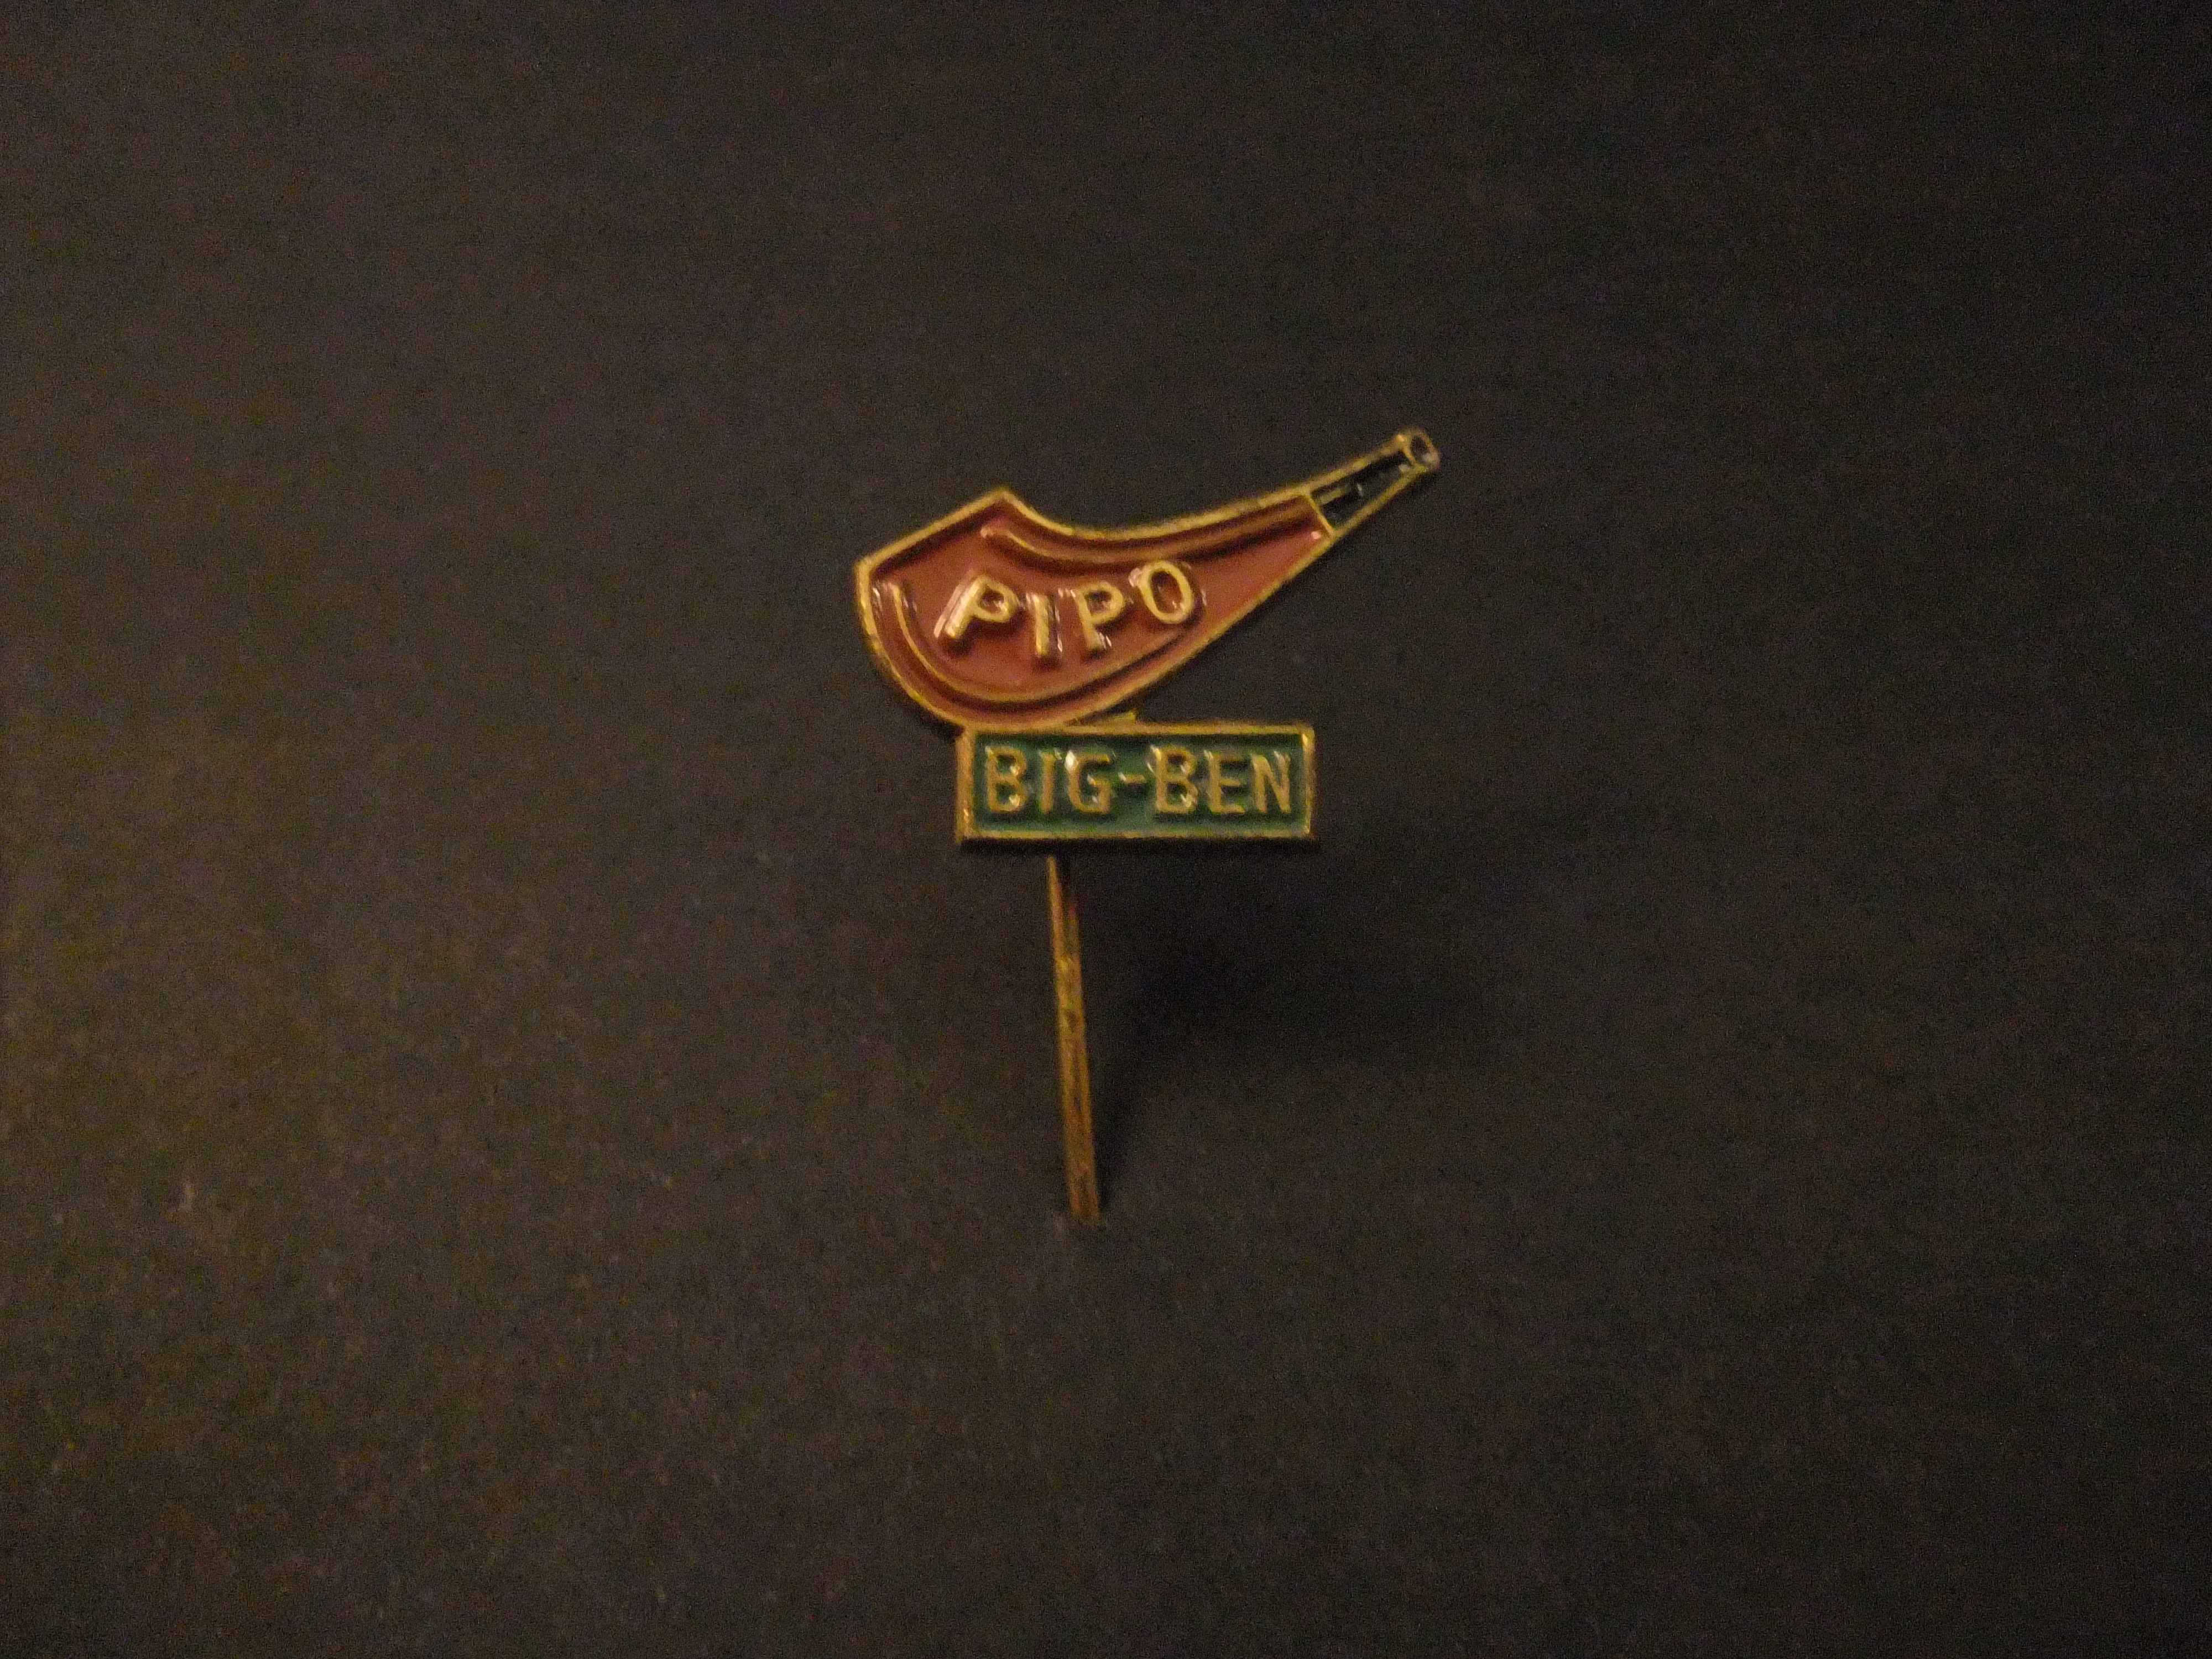 Big Ben Pipo pijp, ( tabakspijp) gemaakt door tabaks-firma Gubbels